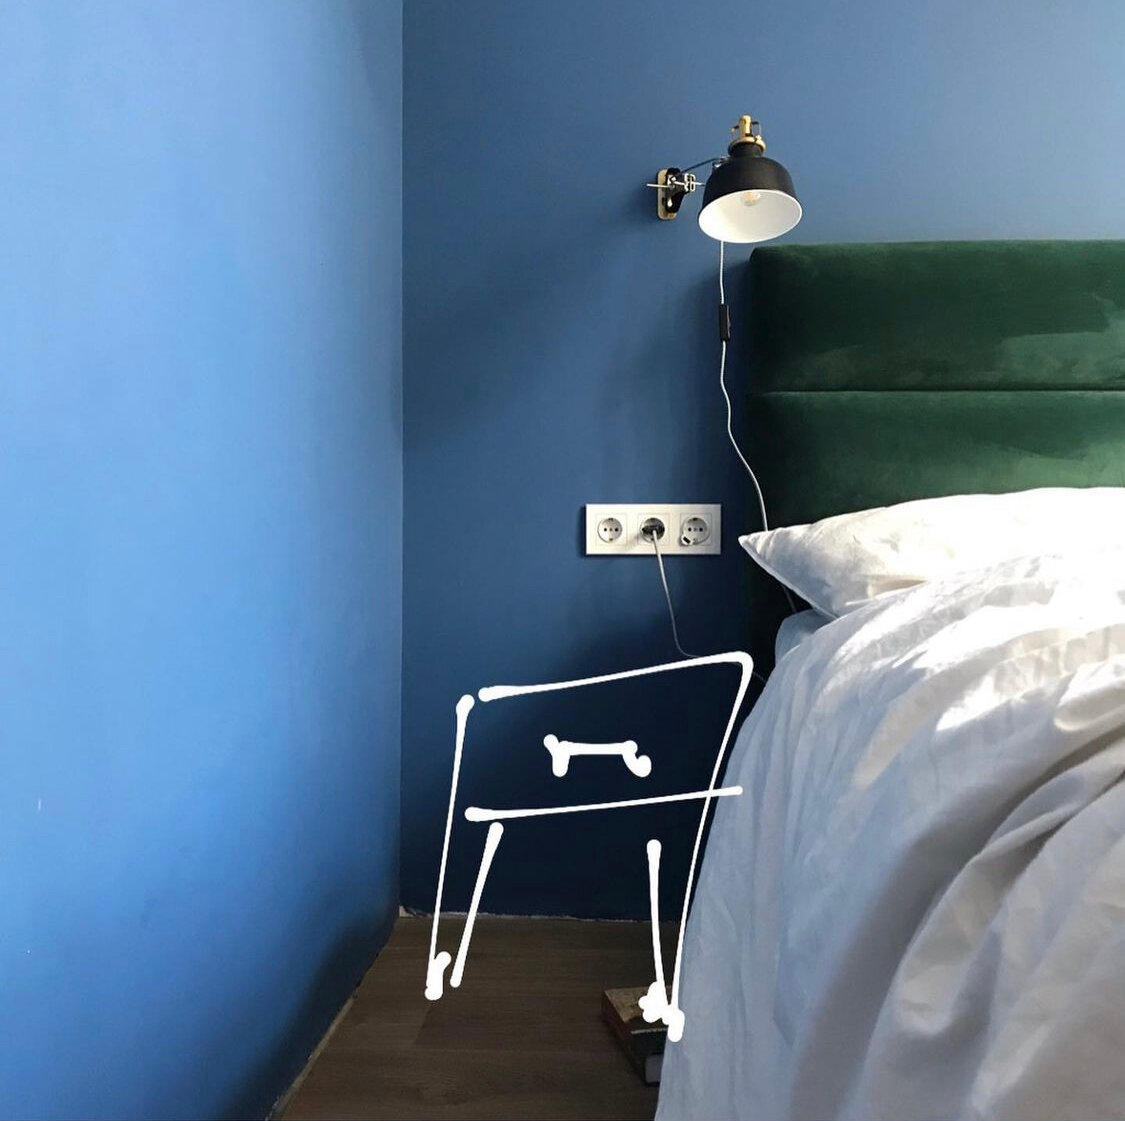 Как мне живётся с синими стенами в спальне идеи для дома,Интерьер и дизайн